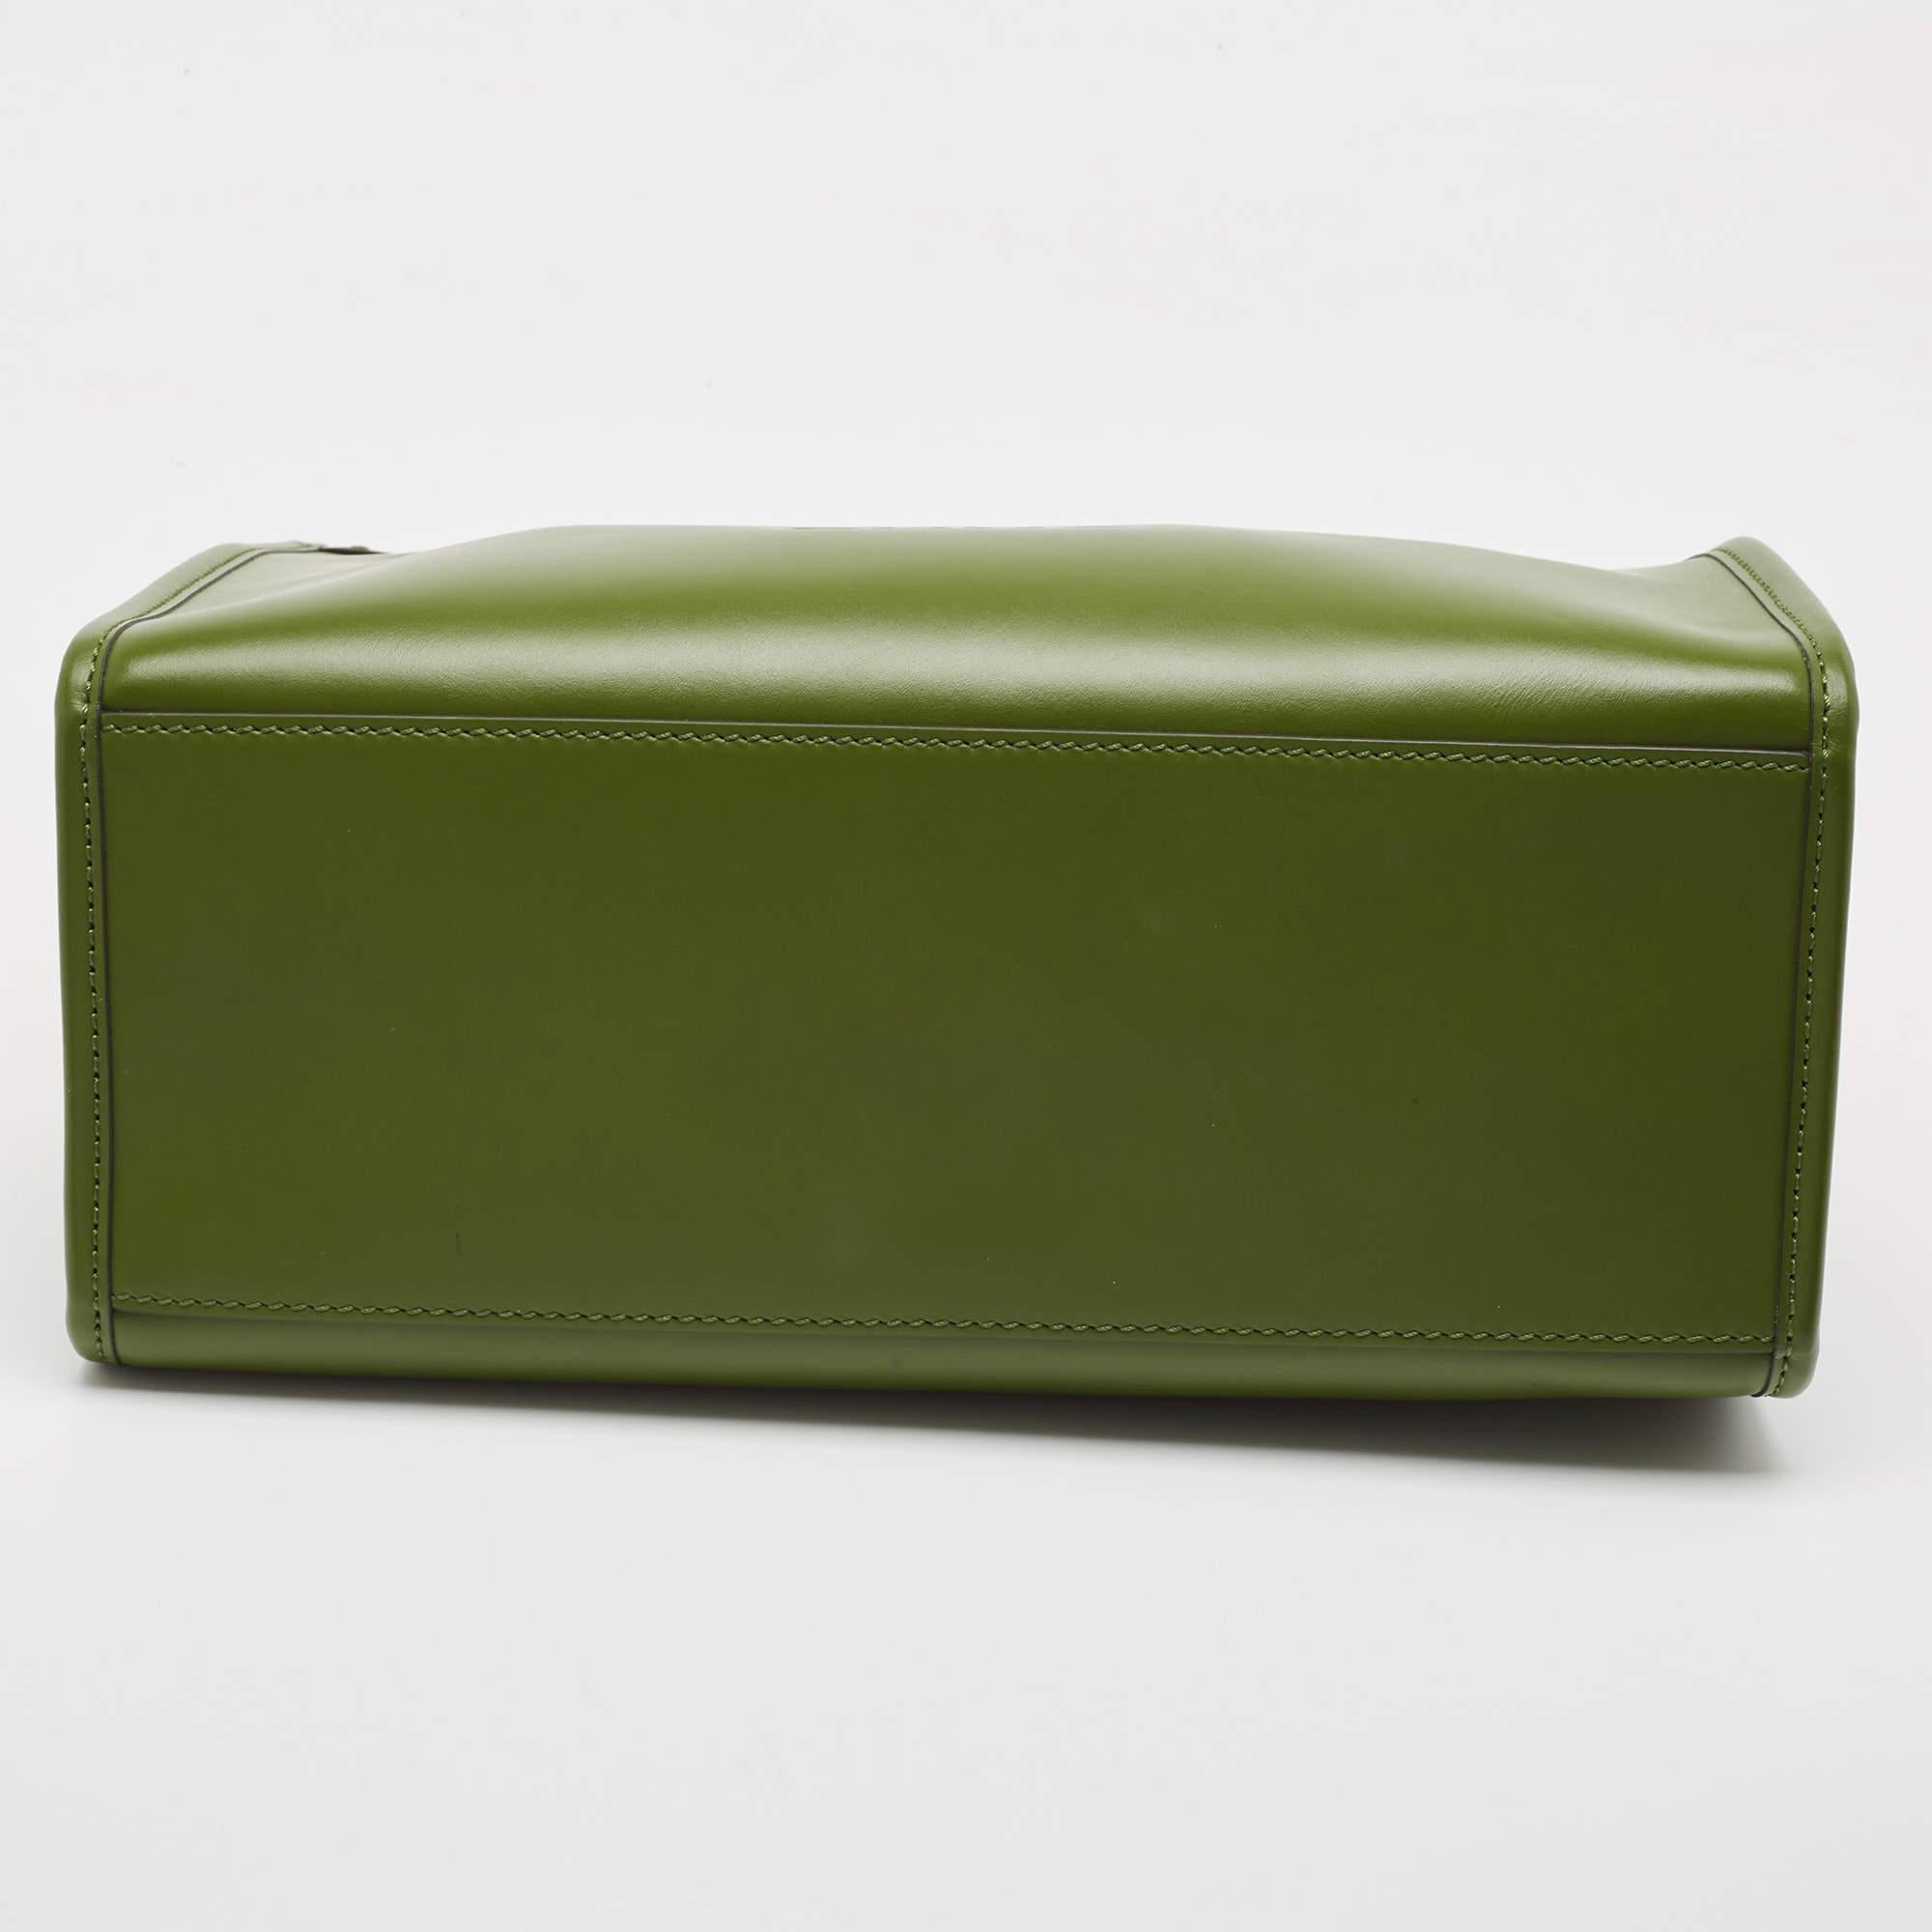 Fendi Green Leather Medium Sunshine Tote In Good Condition For Sale In Dubai, Al Qouz 2